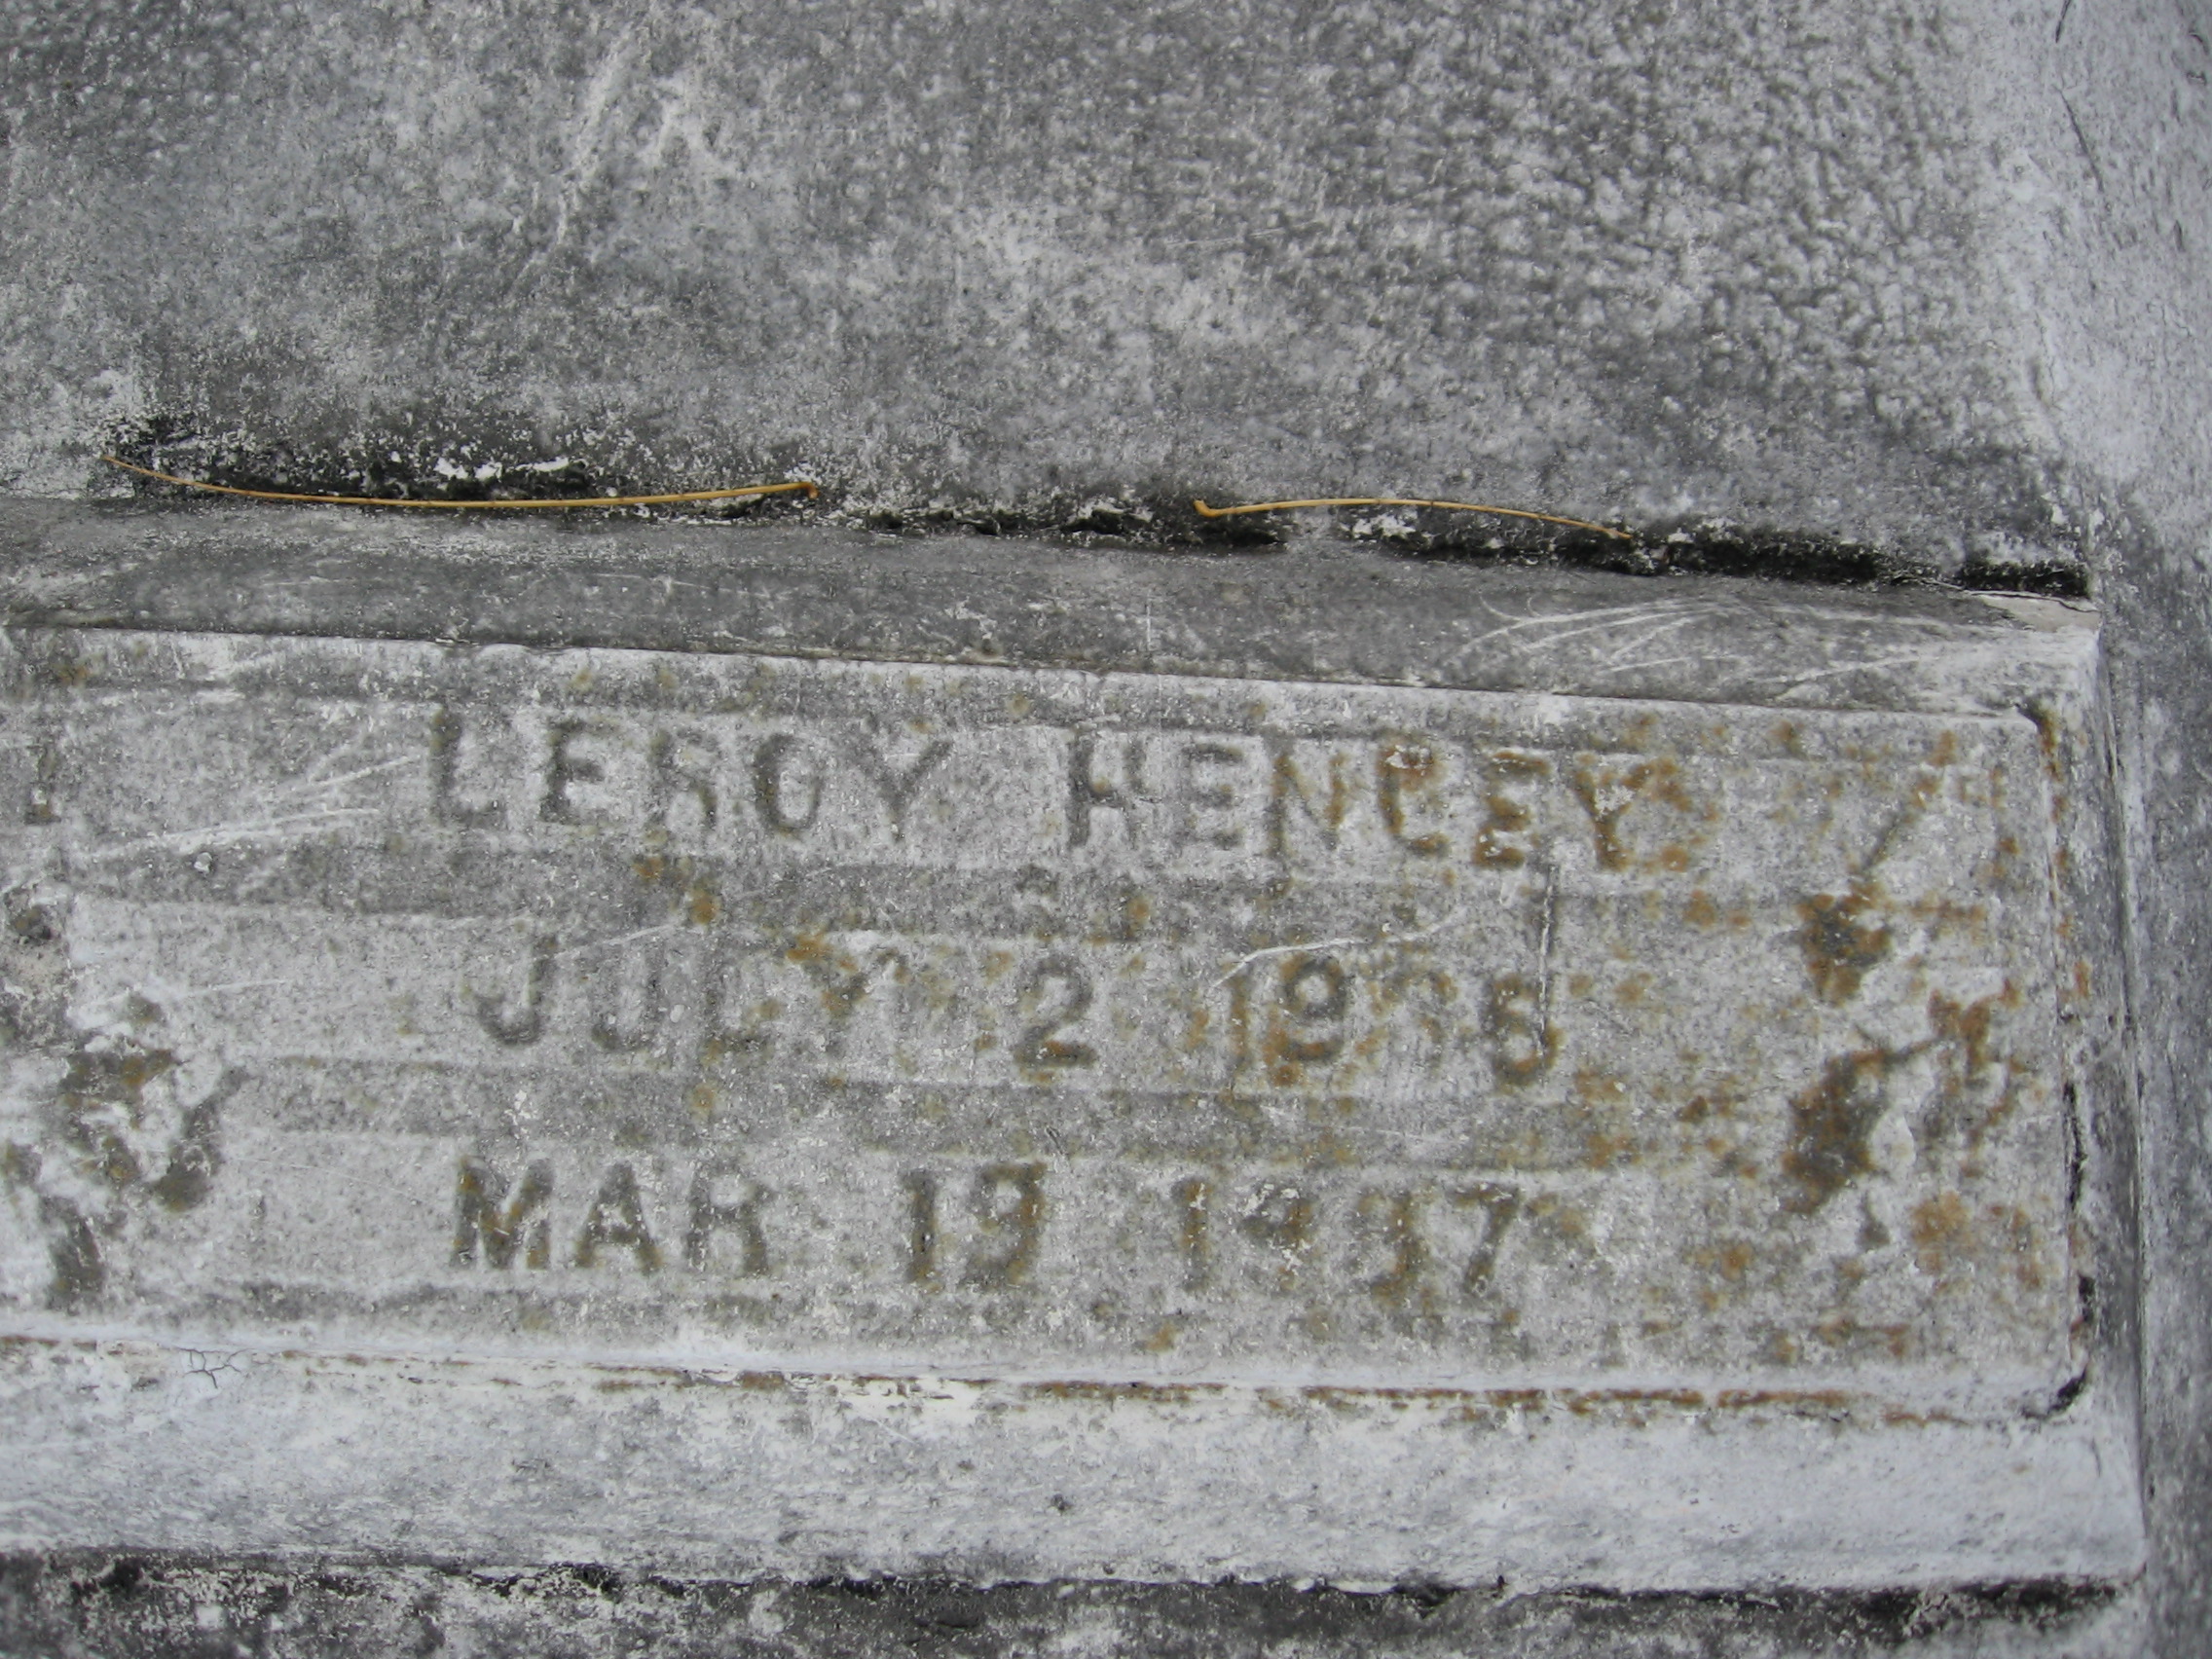 Leroy Henley